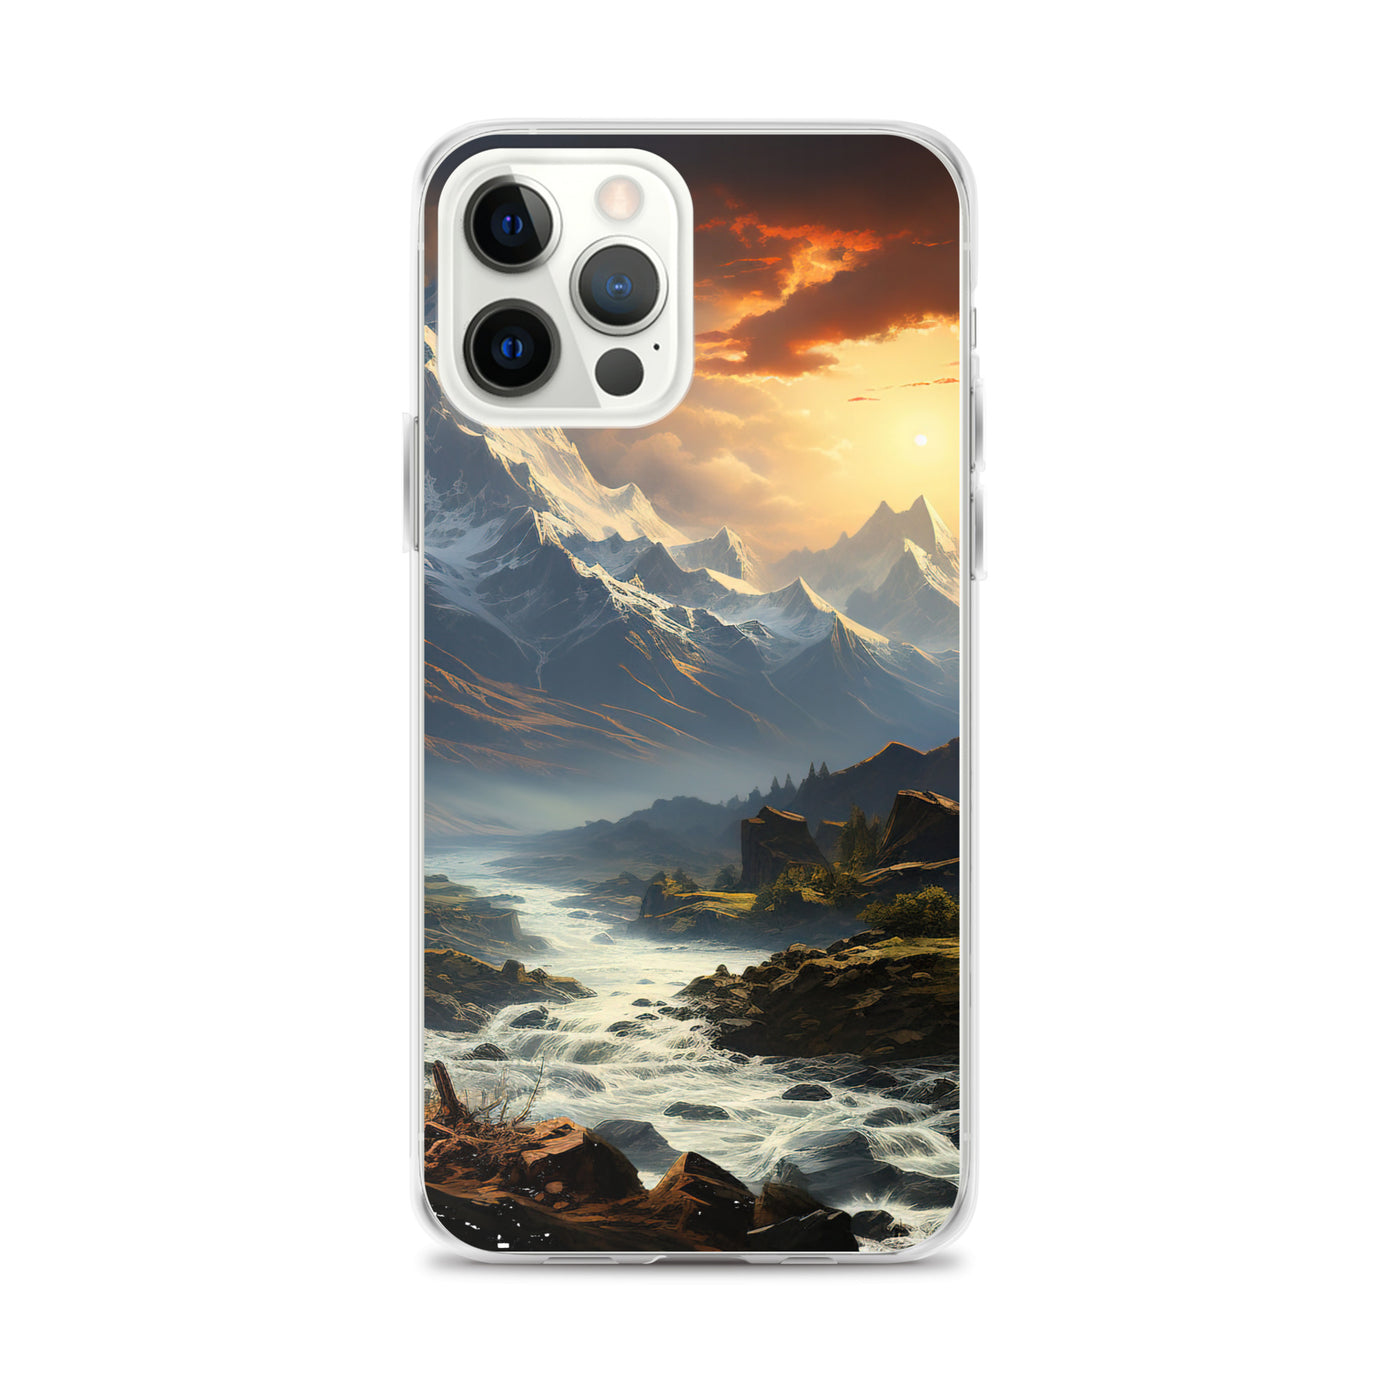 Berge, Sonne, steiniger Bach und Wolken - Epische Stimmung - iPhone Schutzhülle (durchsichtig) berge xxx iPhone 12 Pro Max